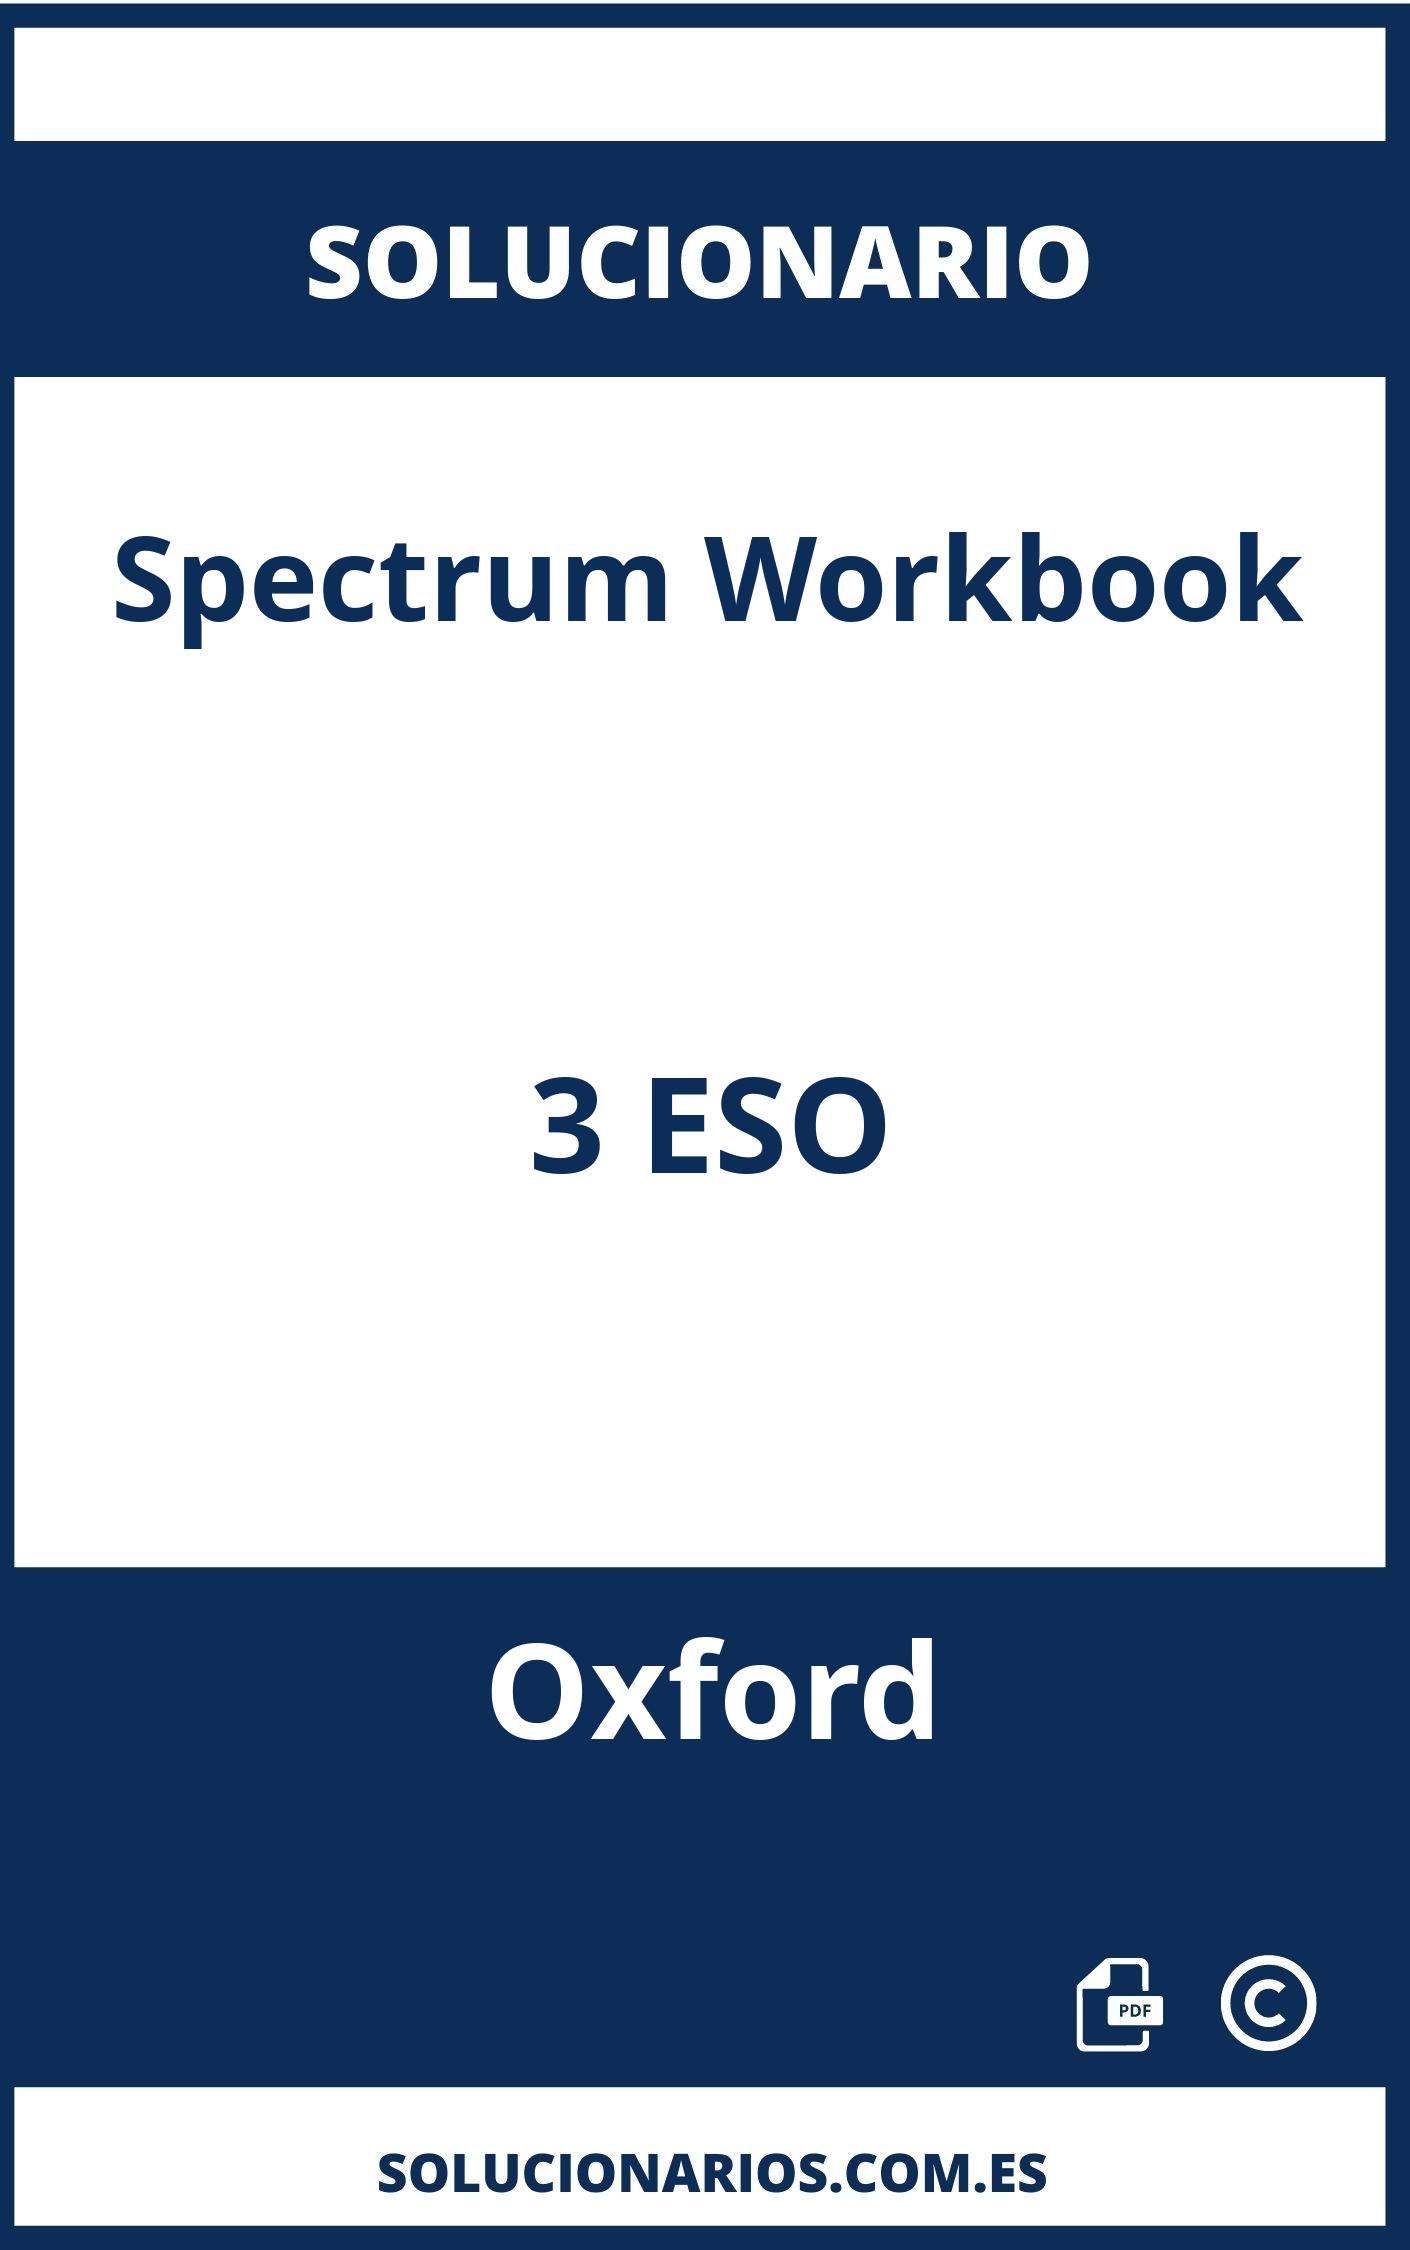 Solucionario Spectrum Workbook 3 ESO Oxford